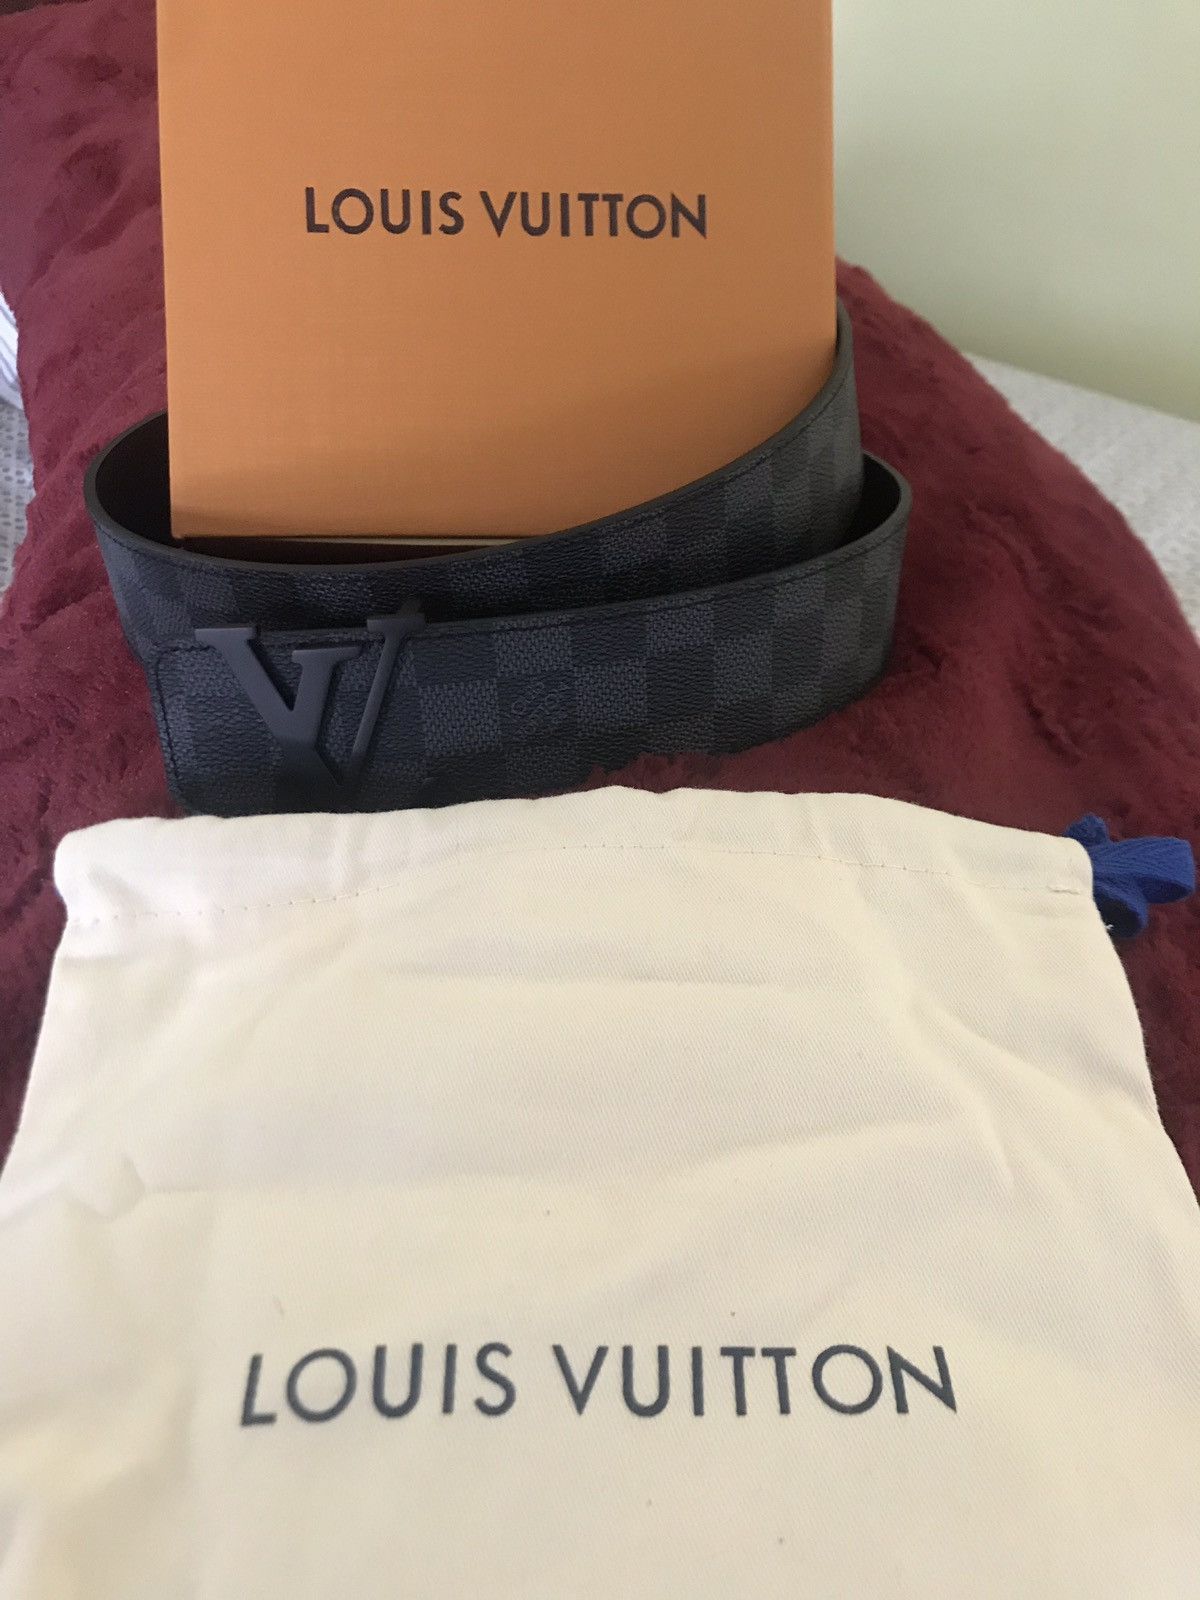 Louis Vuitton, Accessories, Vintage Louis Vuitton Belt Size 95 Over 38  Size Us